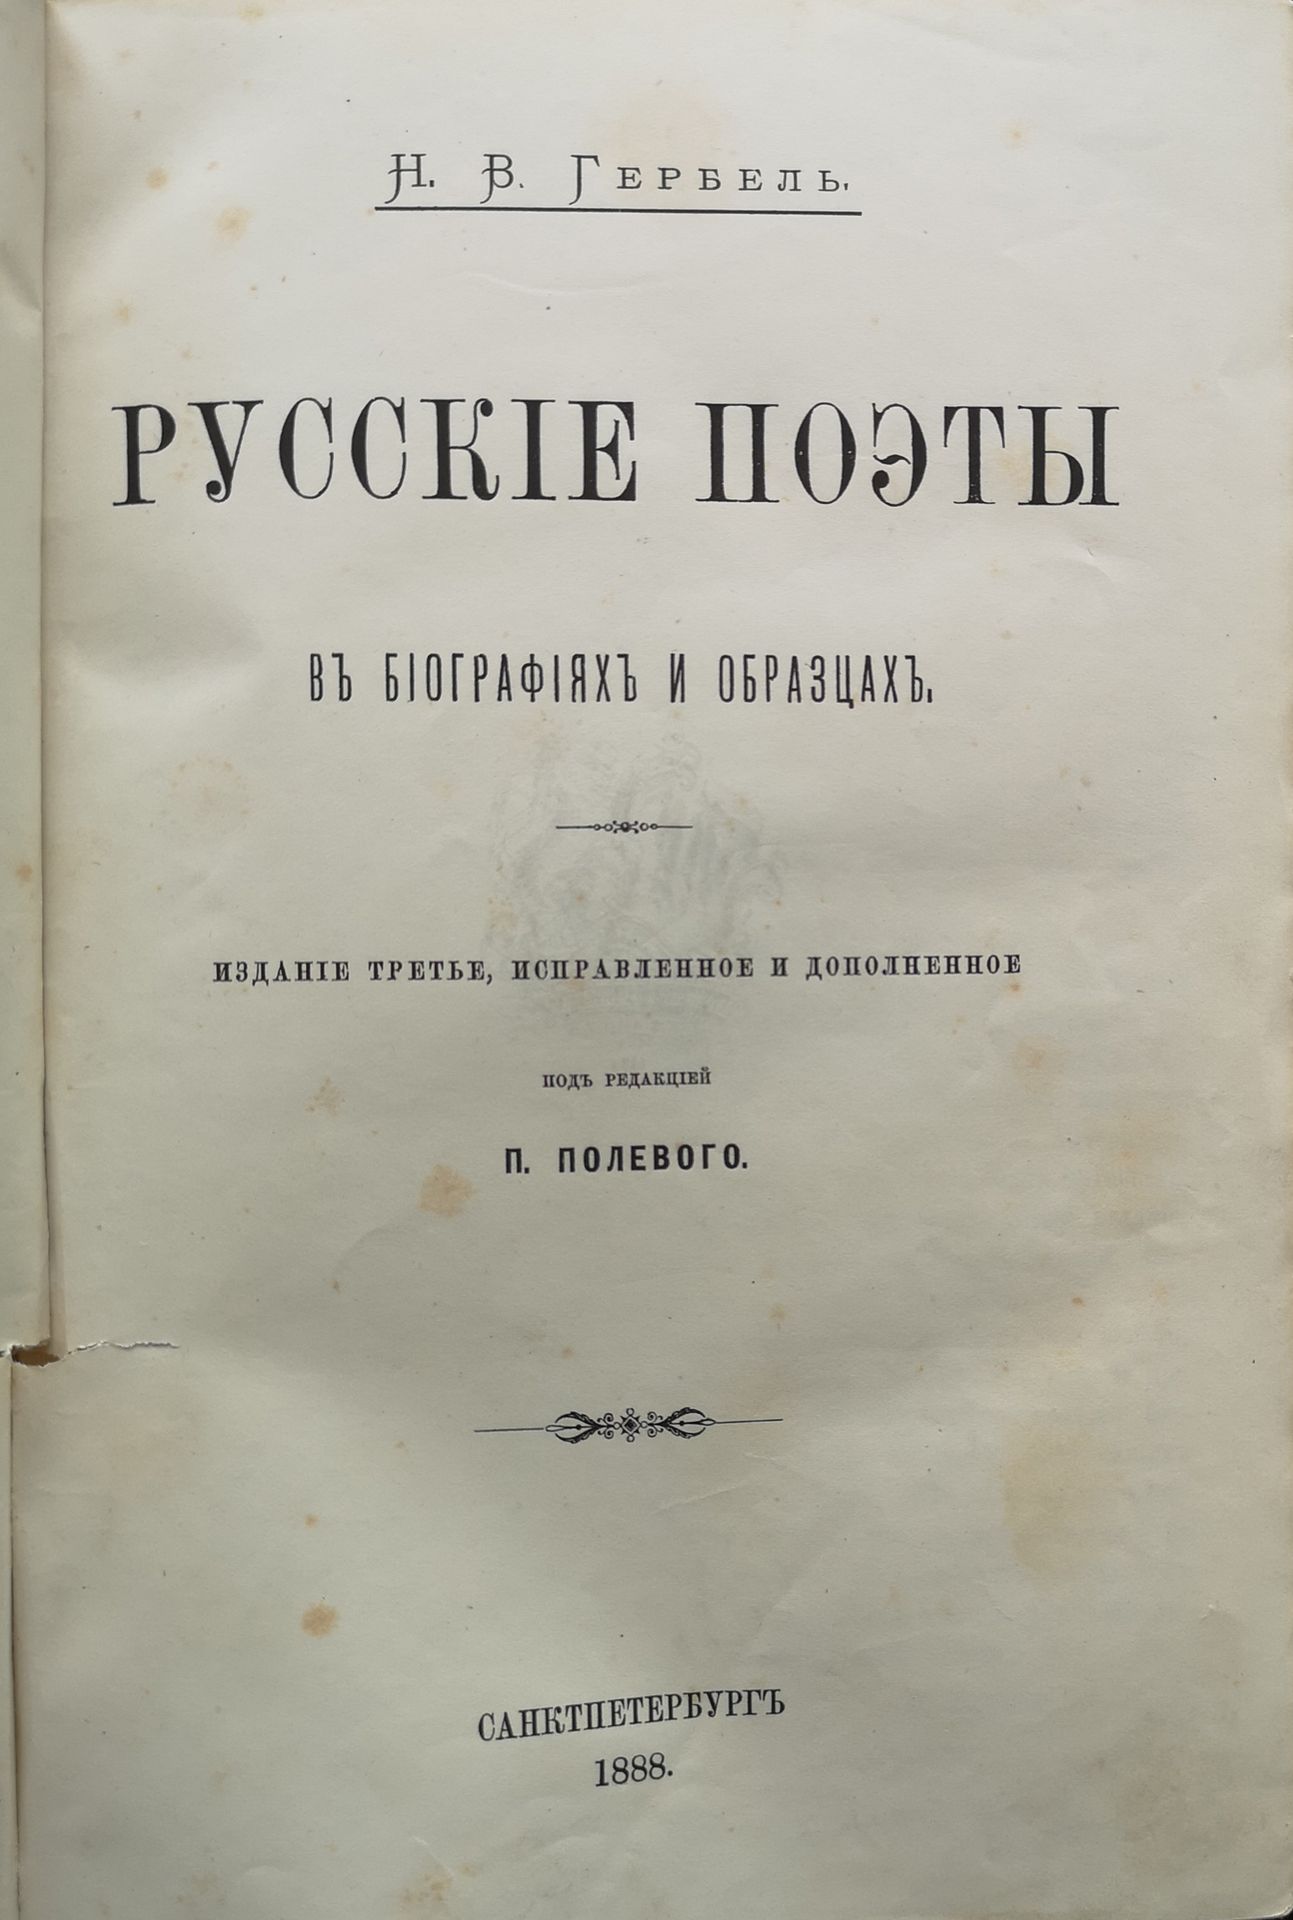 Null 来自尼古拉斯-图罗弗洛夫图书馆的资料] 。

一组4本艺术书籍：1）Gerbel N. The Russian Poets.第三版，圣彼得堡，1888&hellip;